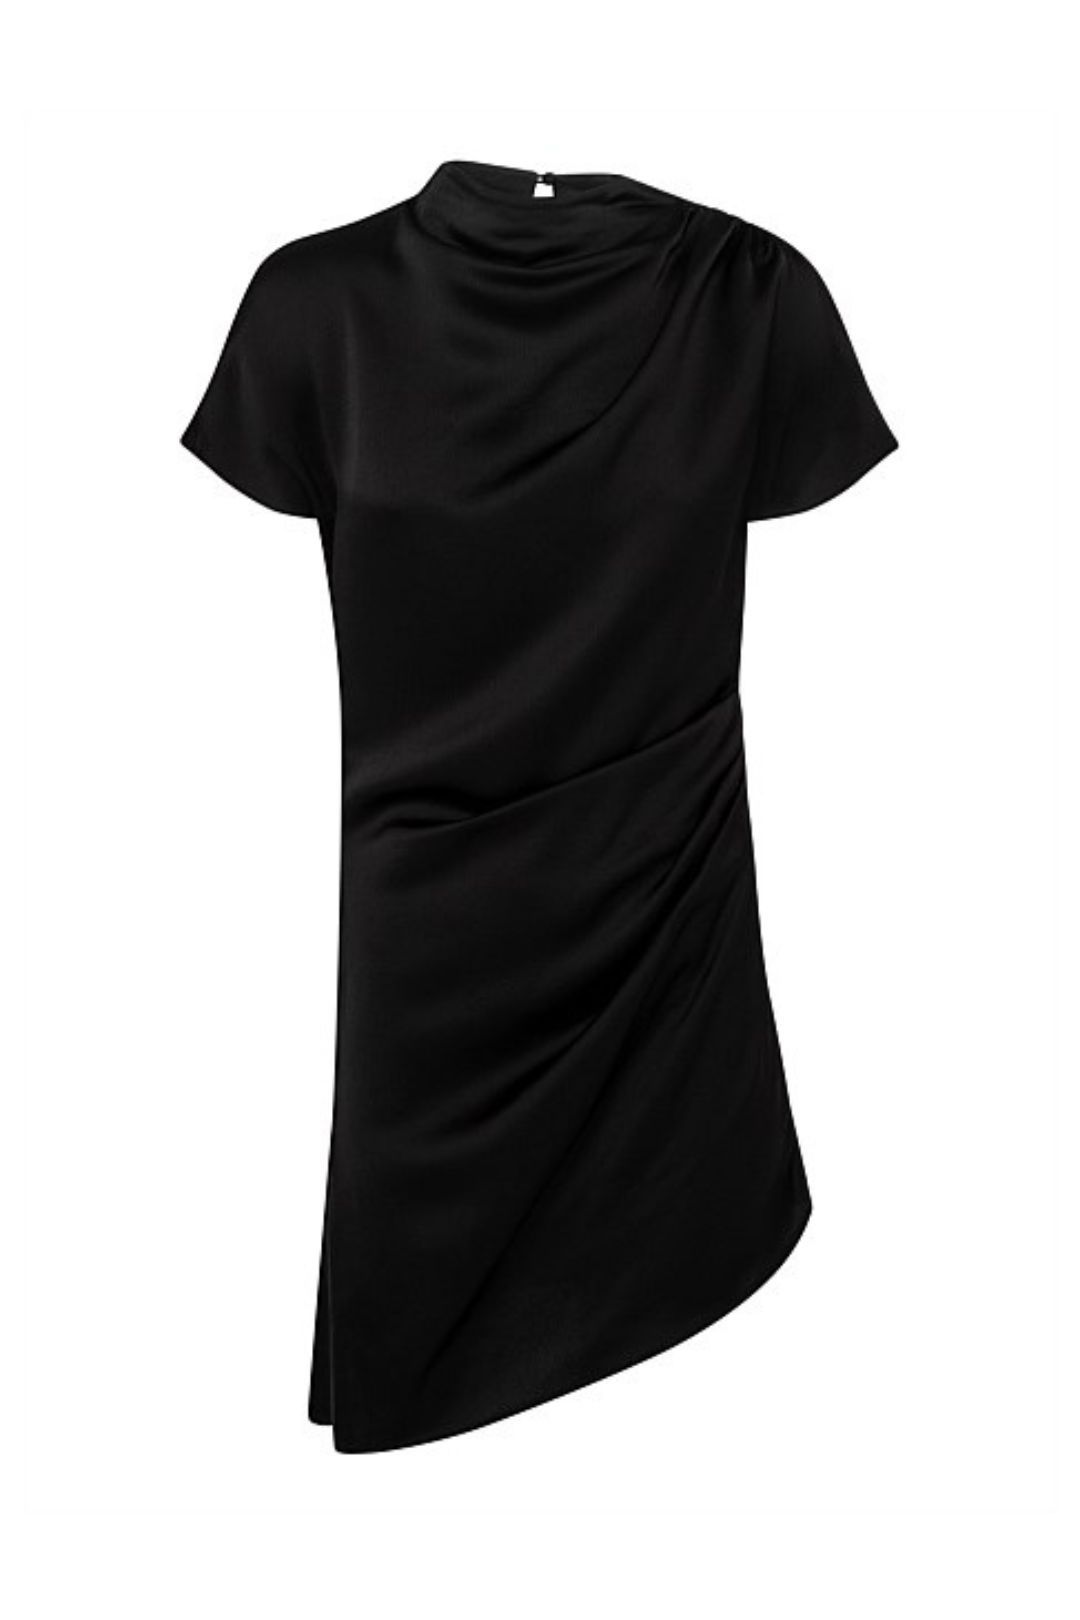 Anna Quan Macey Mini Dress in Black